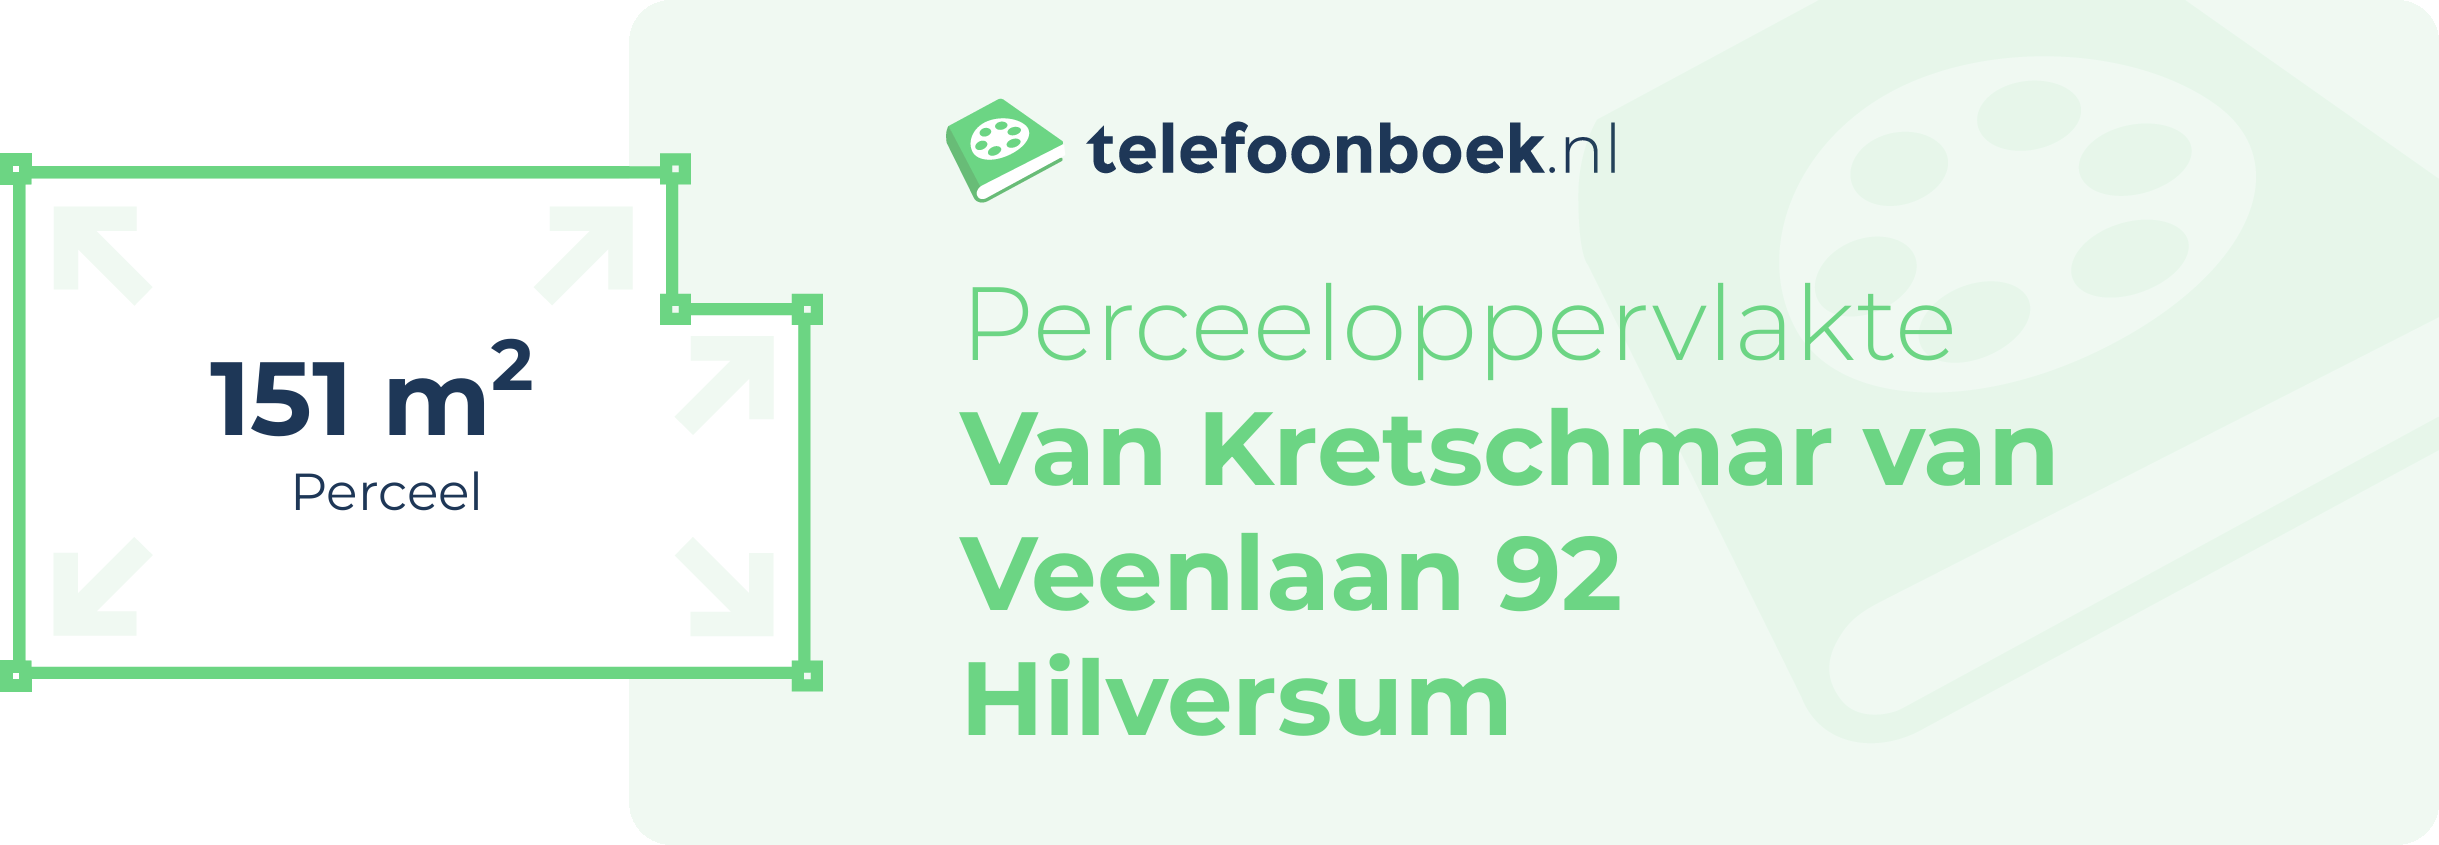 Perceeloppervlakte Van Kretschmar Van Veenlaan 92 Hilversum